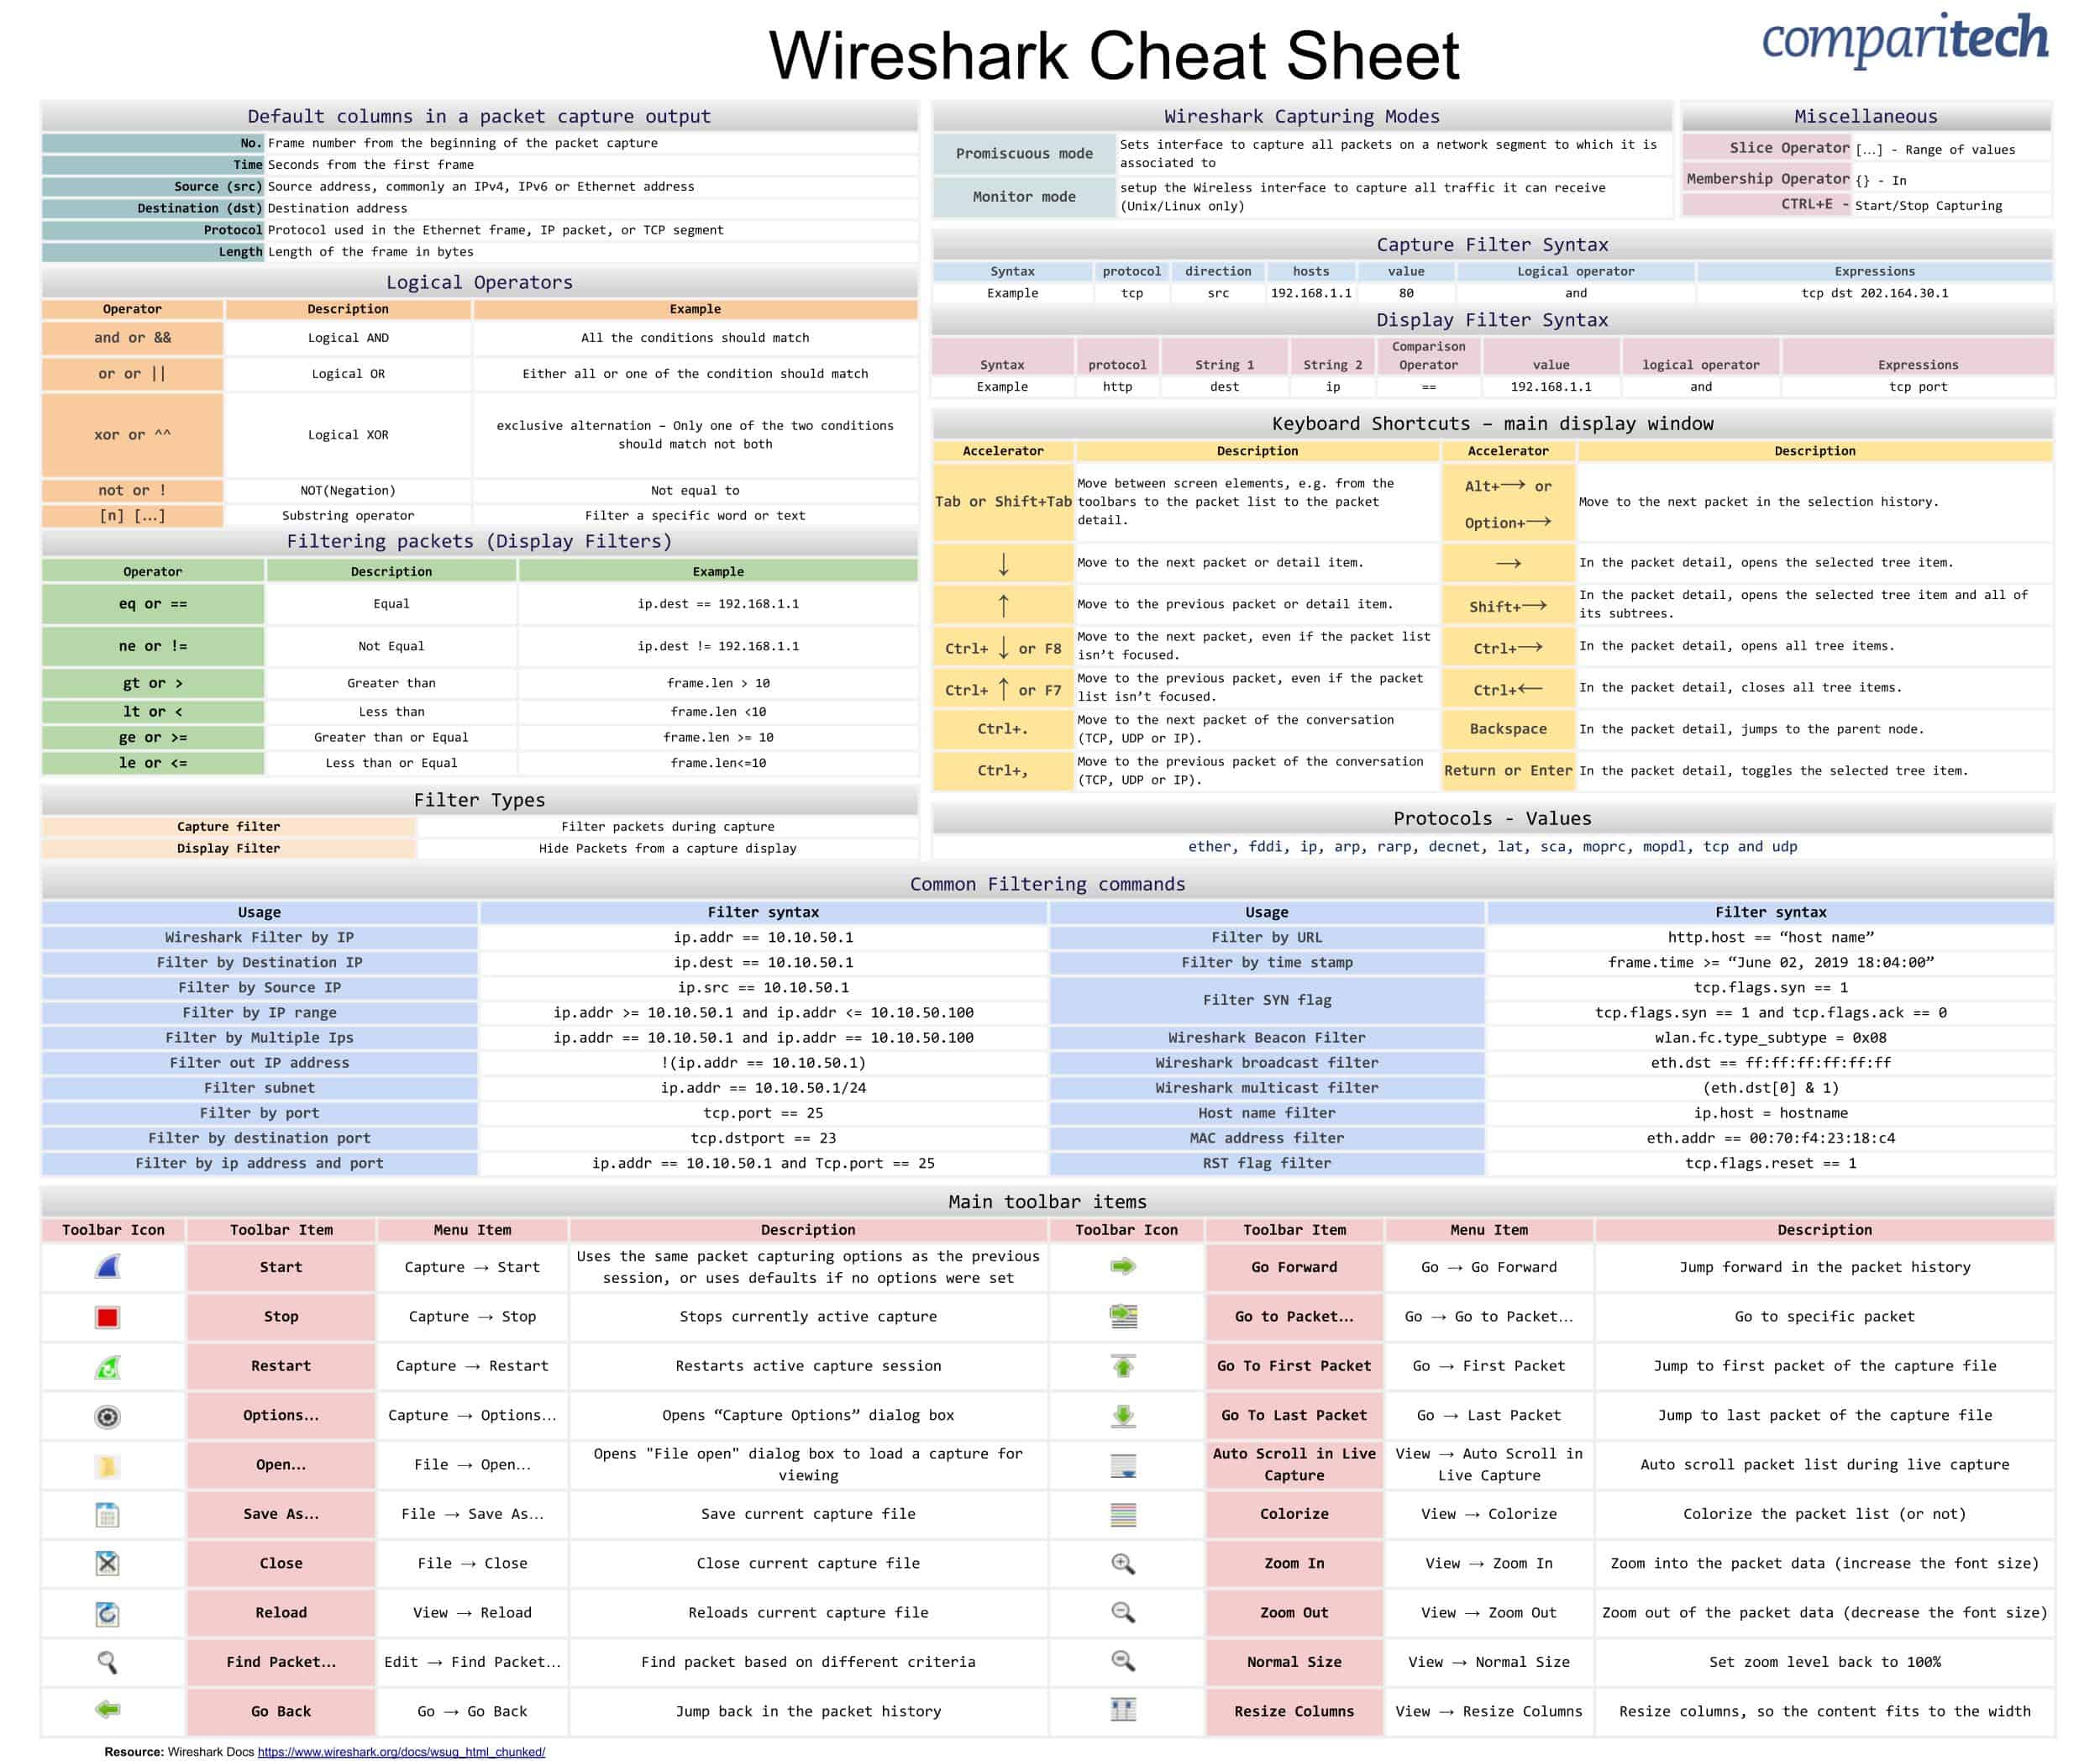 https://cdn.comparitech.com/wp-content/uploads/2019/06/Wireshark-Cheat-Sheet-1.jpg